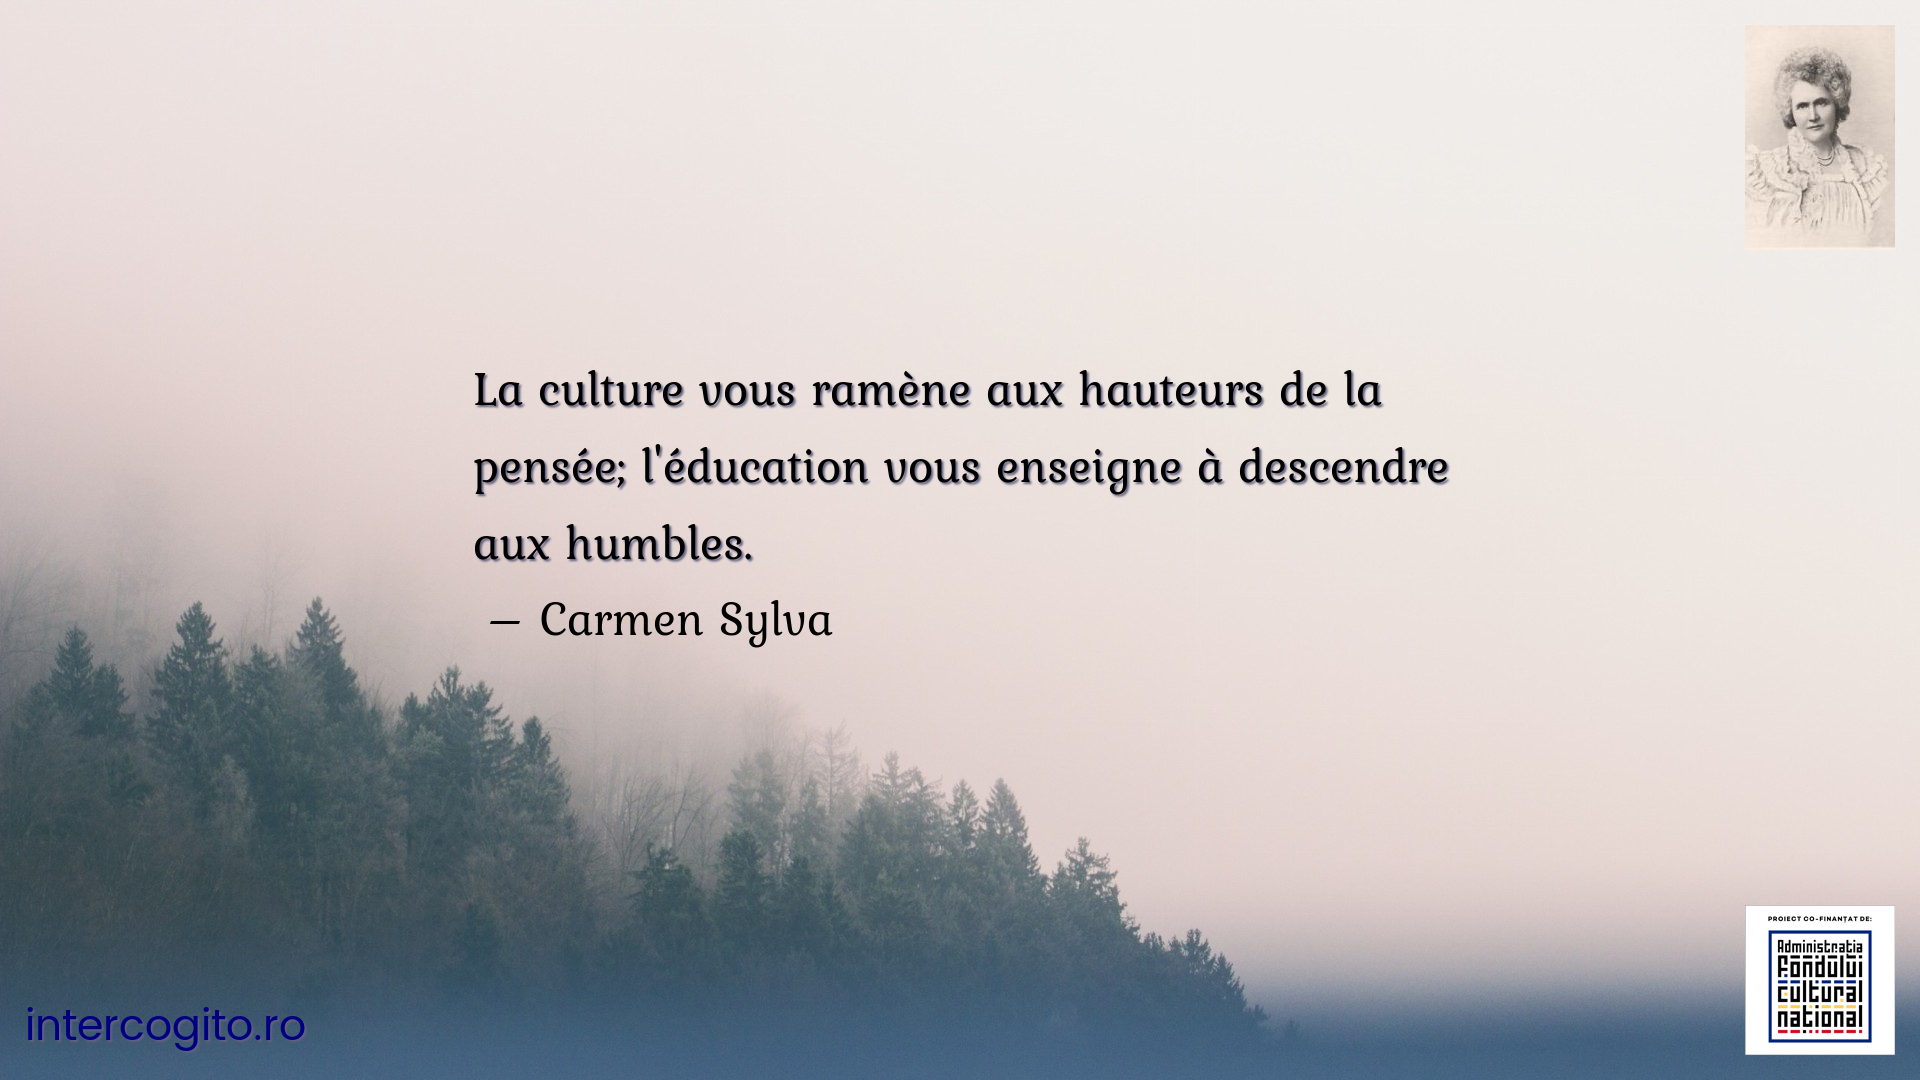 La culture vous ramène aux hauteurs de la pensée; l'éducation vous enseigne à descendre aux humbles.